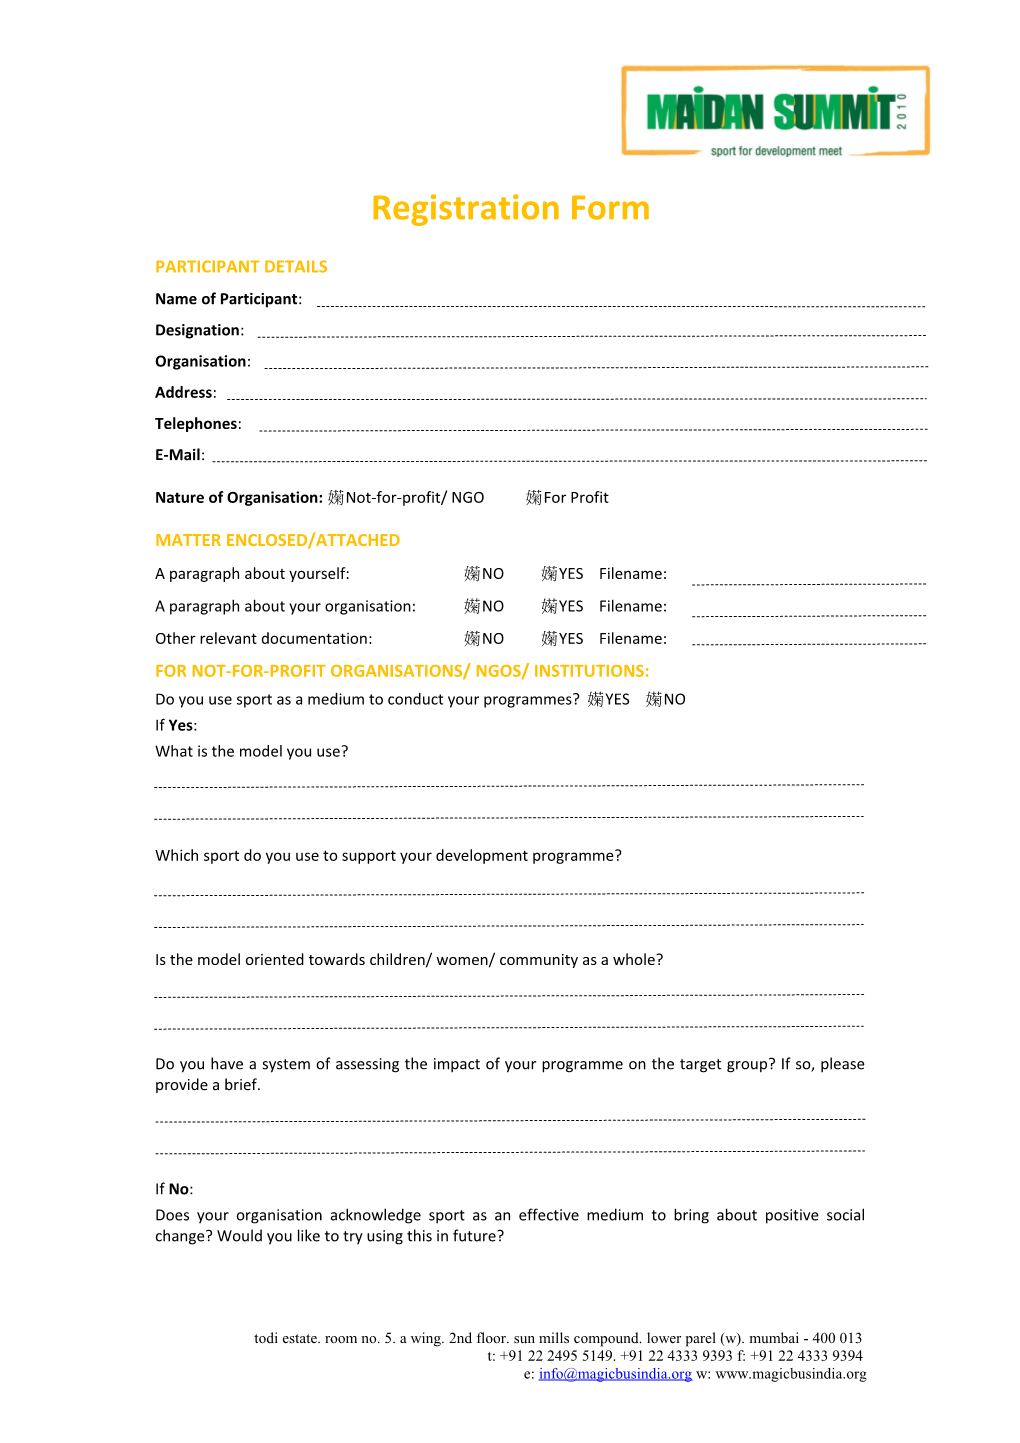 Registration Form s17